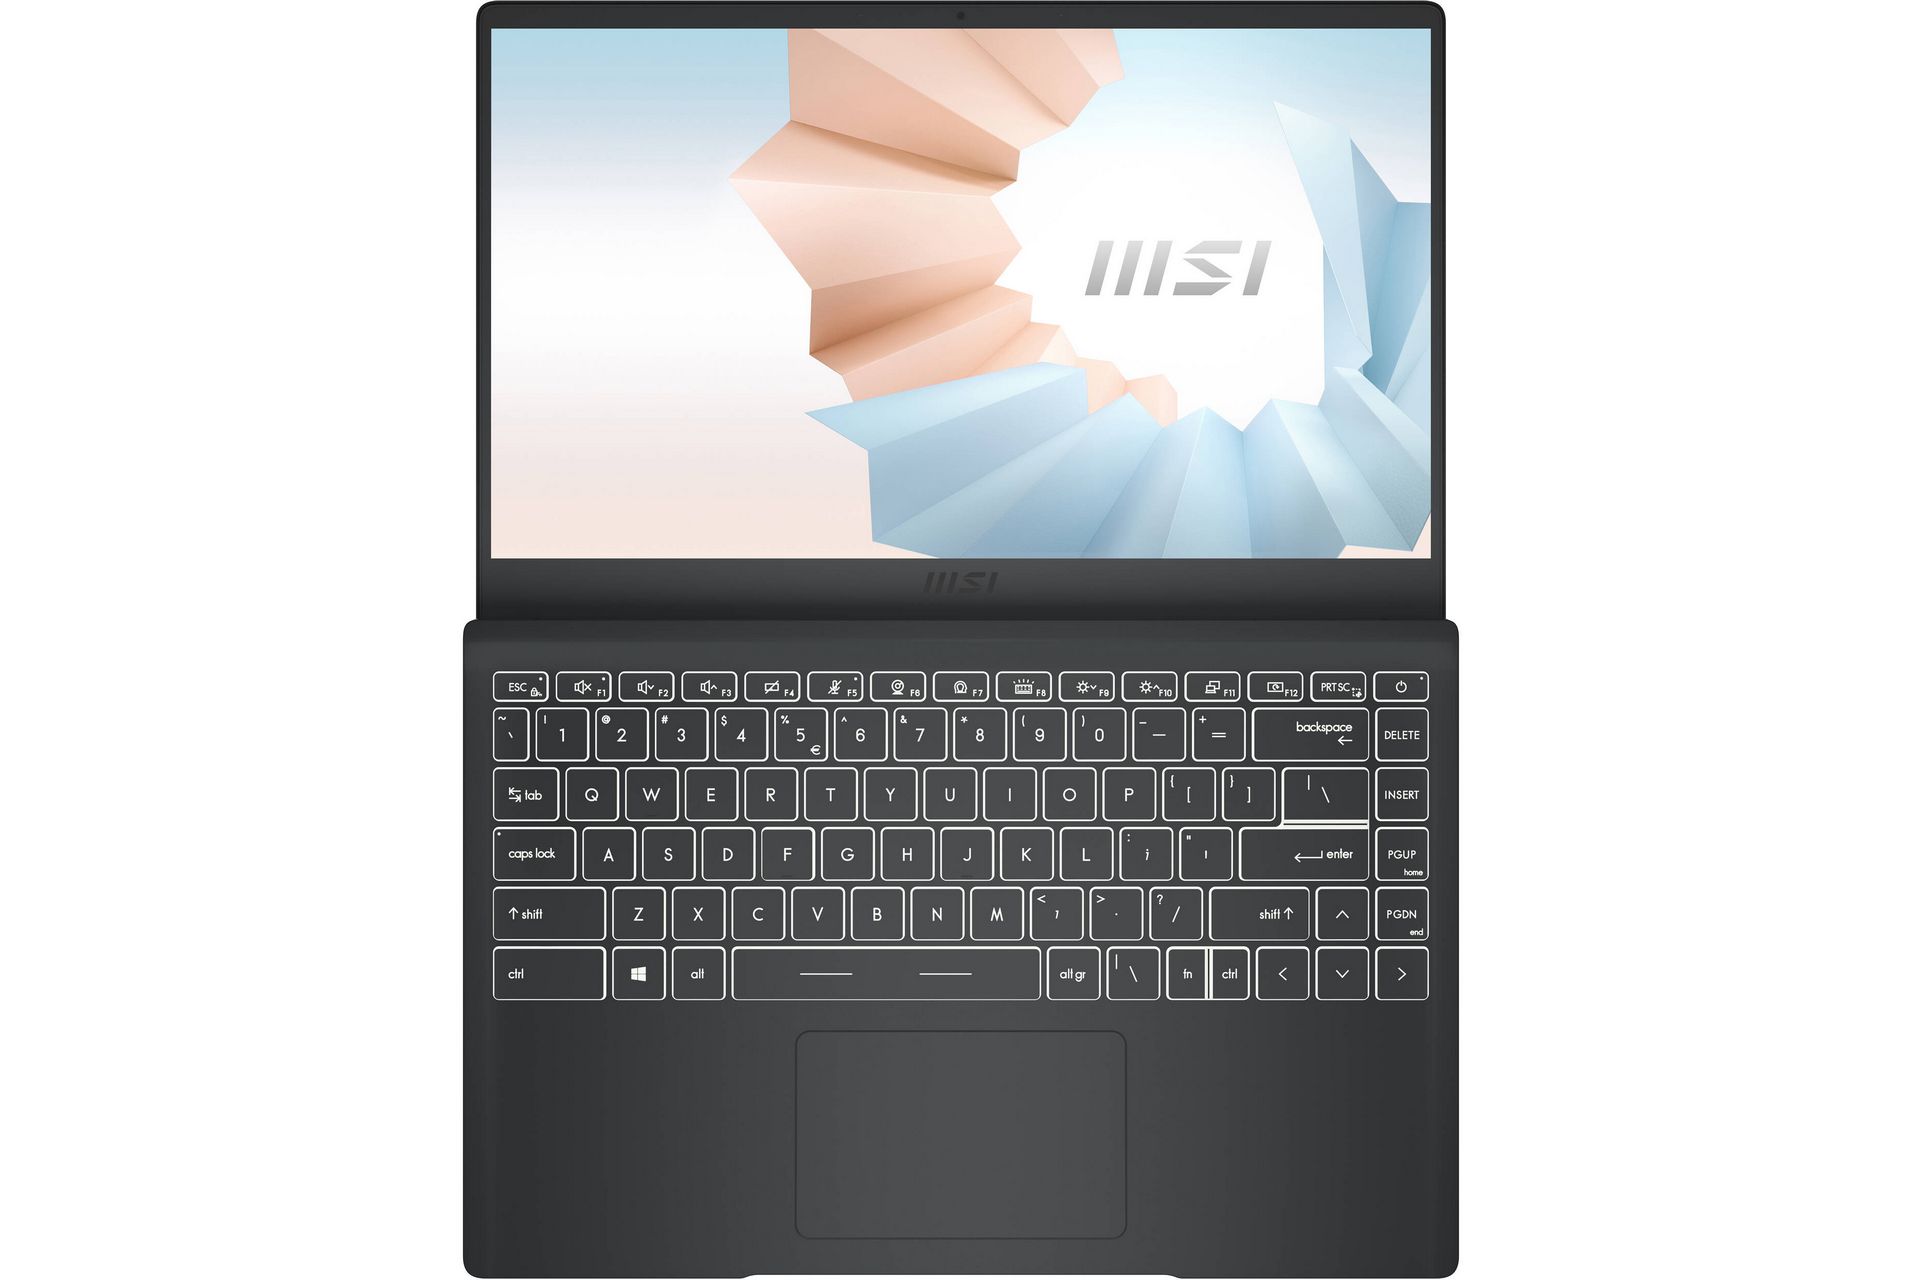 màn hình laptop MSI 15 chuyên nghiệp